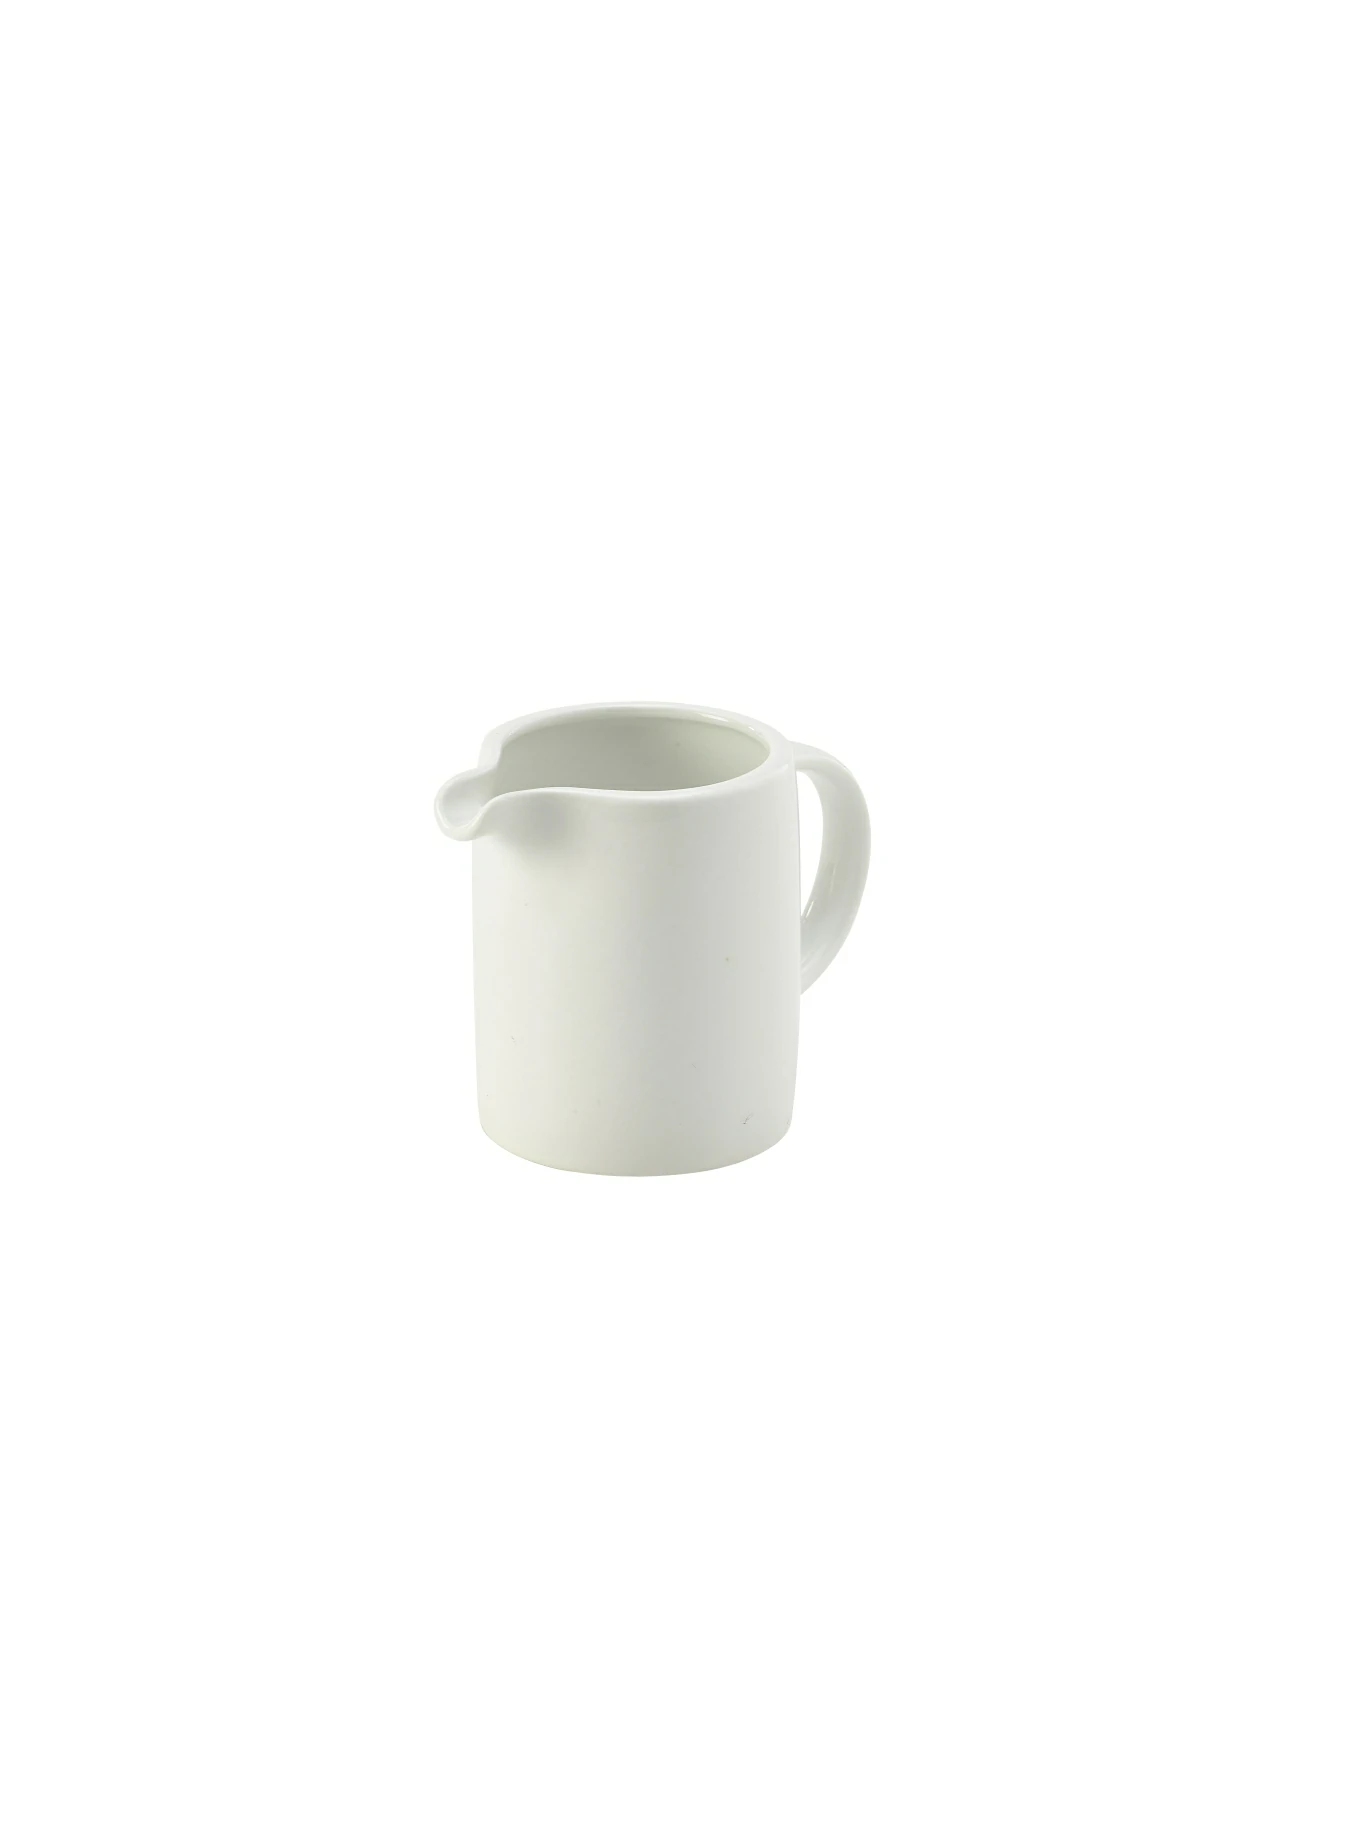 Genware Porcelain Solid Milk Jug 12cl/4oz